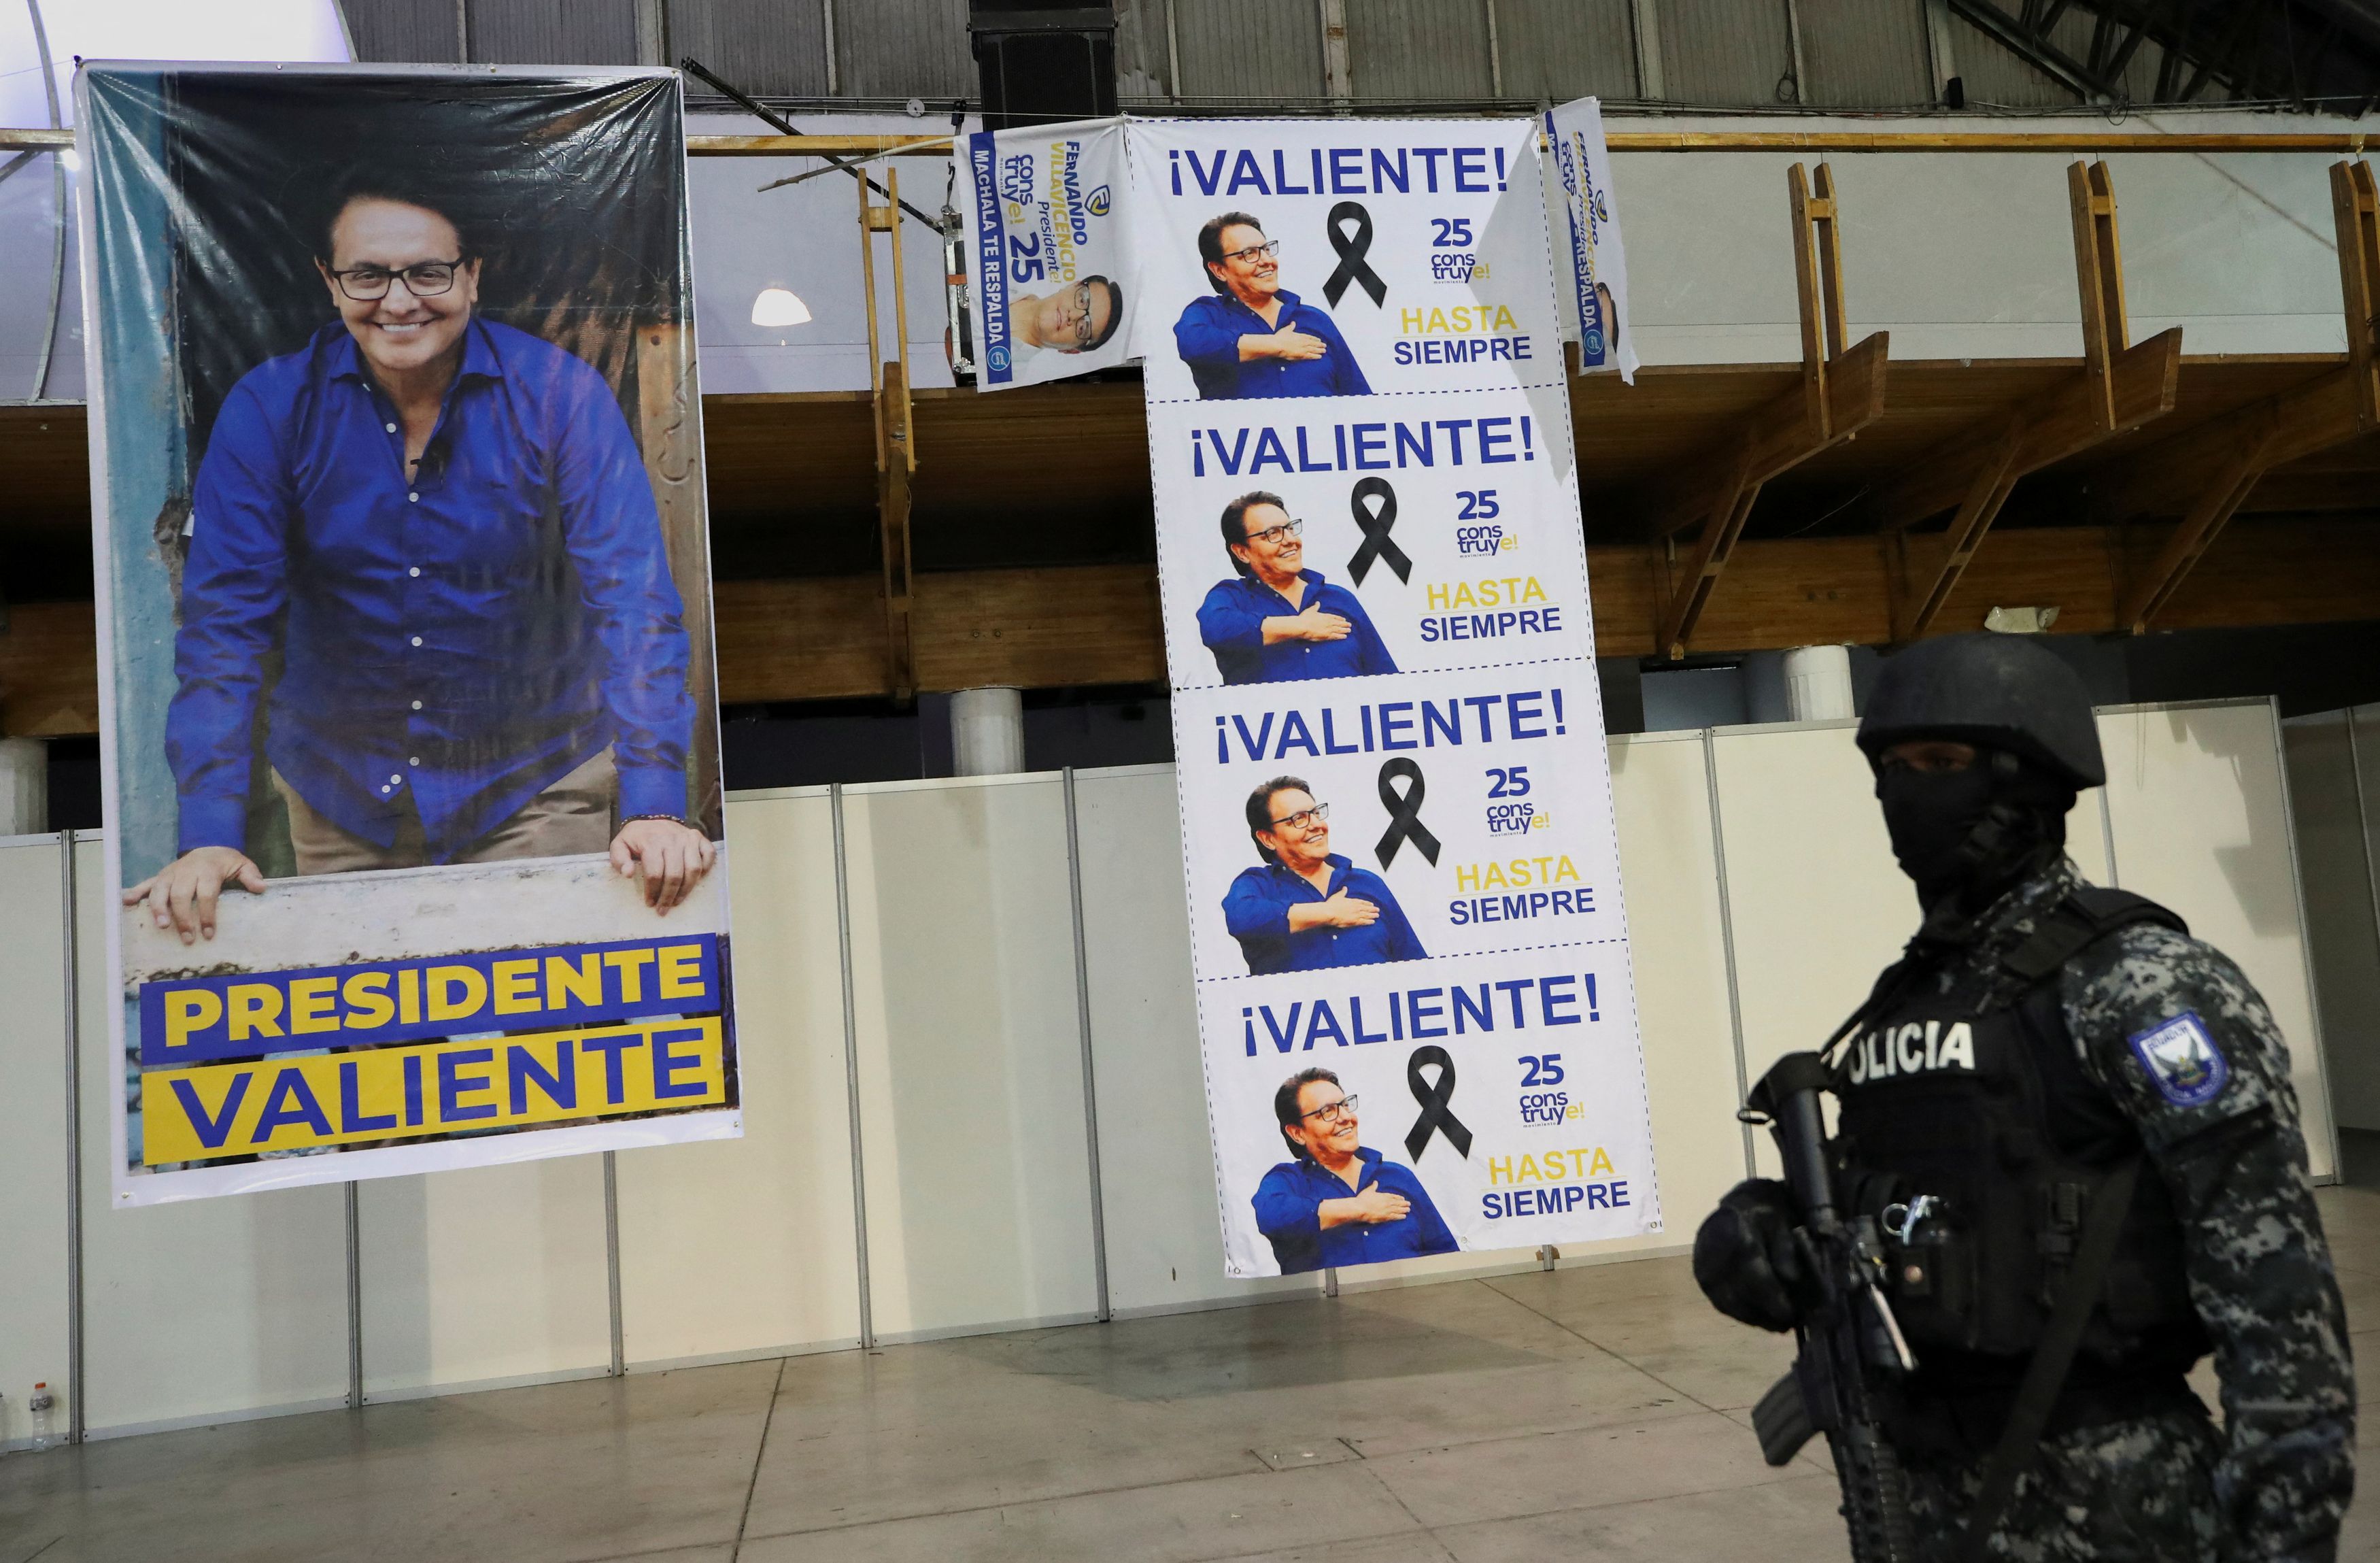 Ισημερινός: Επιχείρηση σε φυλακή μετά τη δολοφονία του υποψήφιου προέδρου - Συμμετείχαν 4.000 στρατιώτες και αστυνομικοί